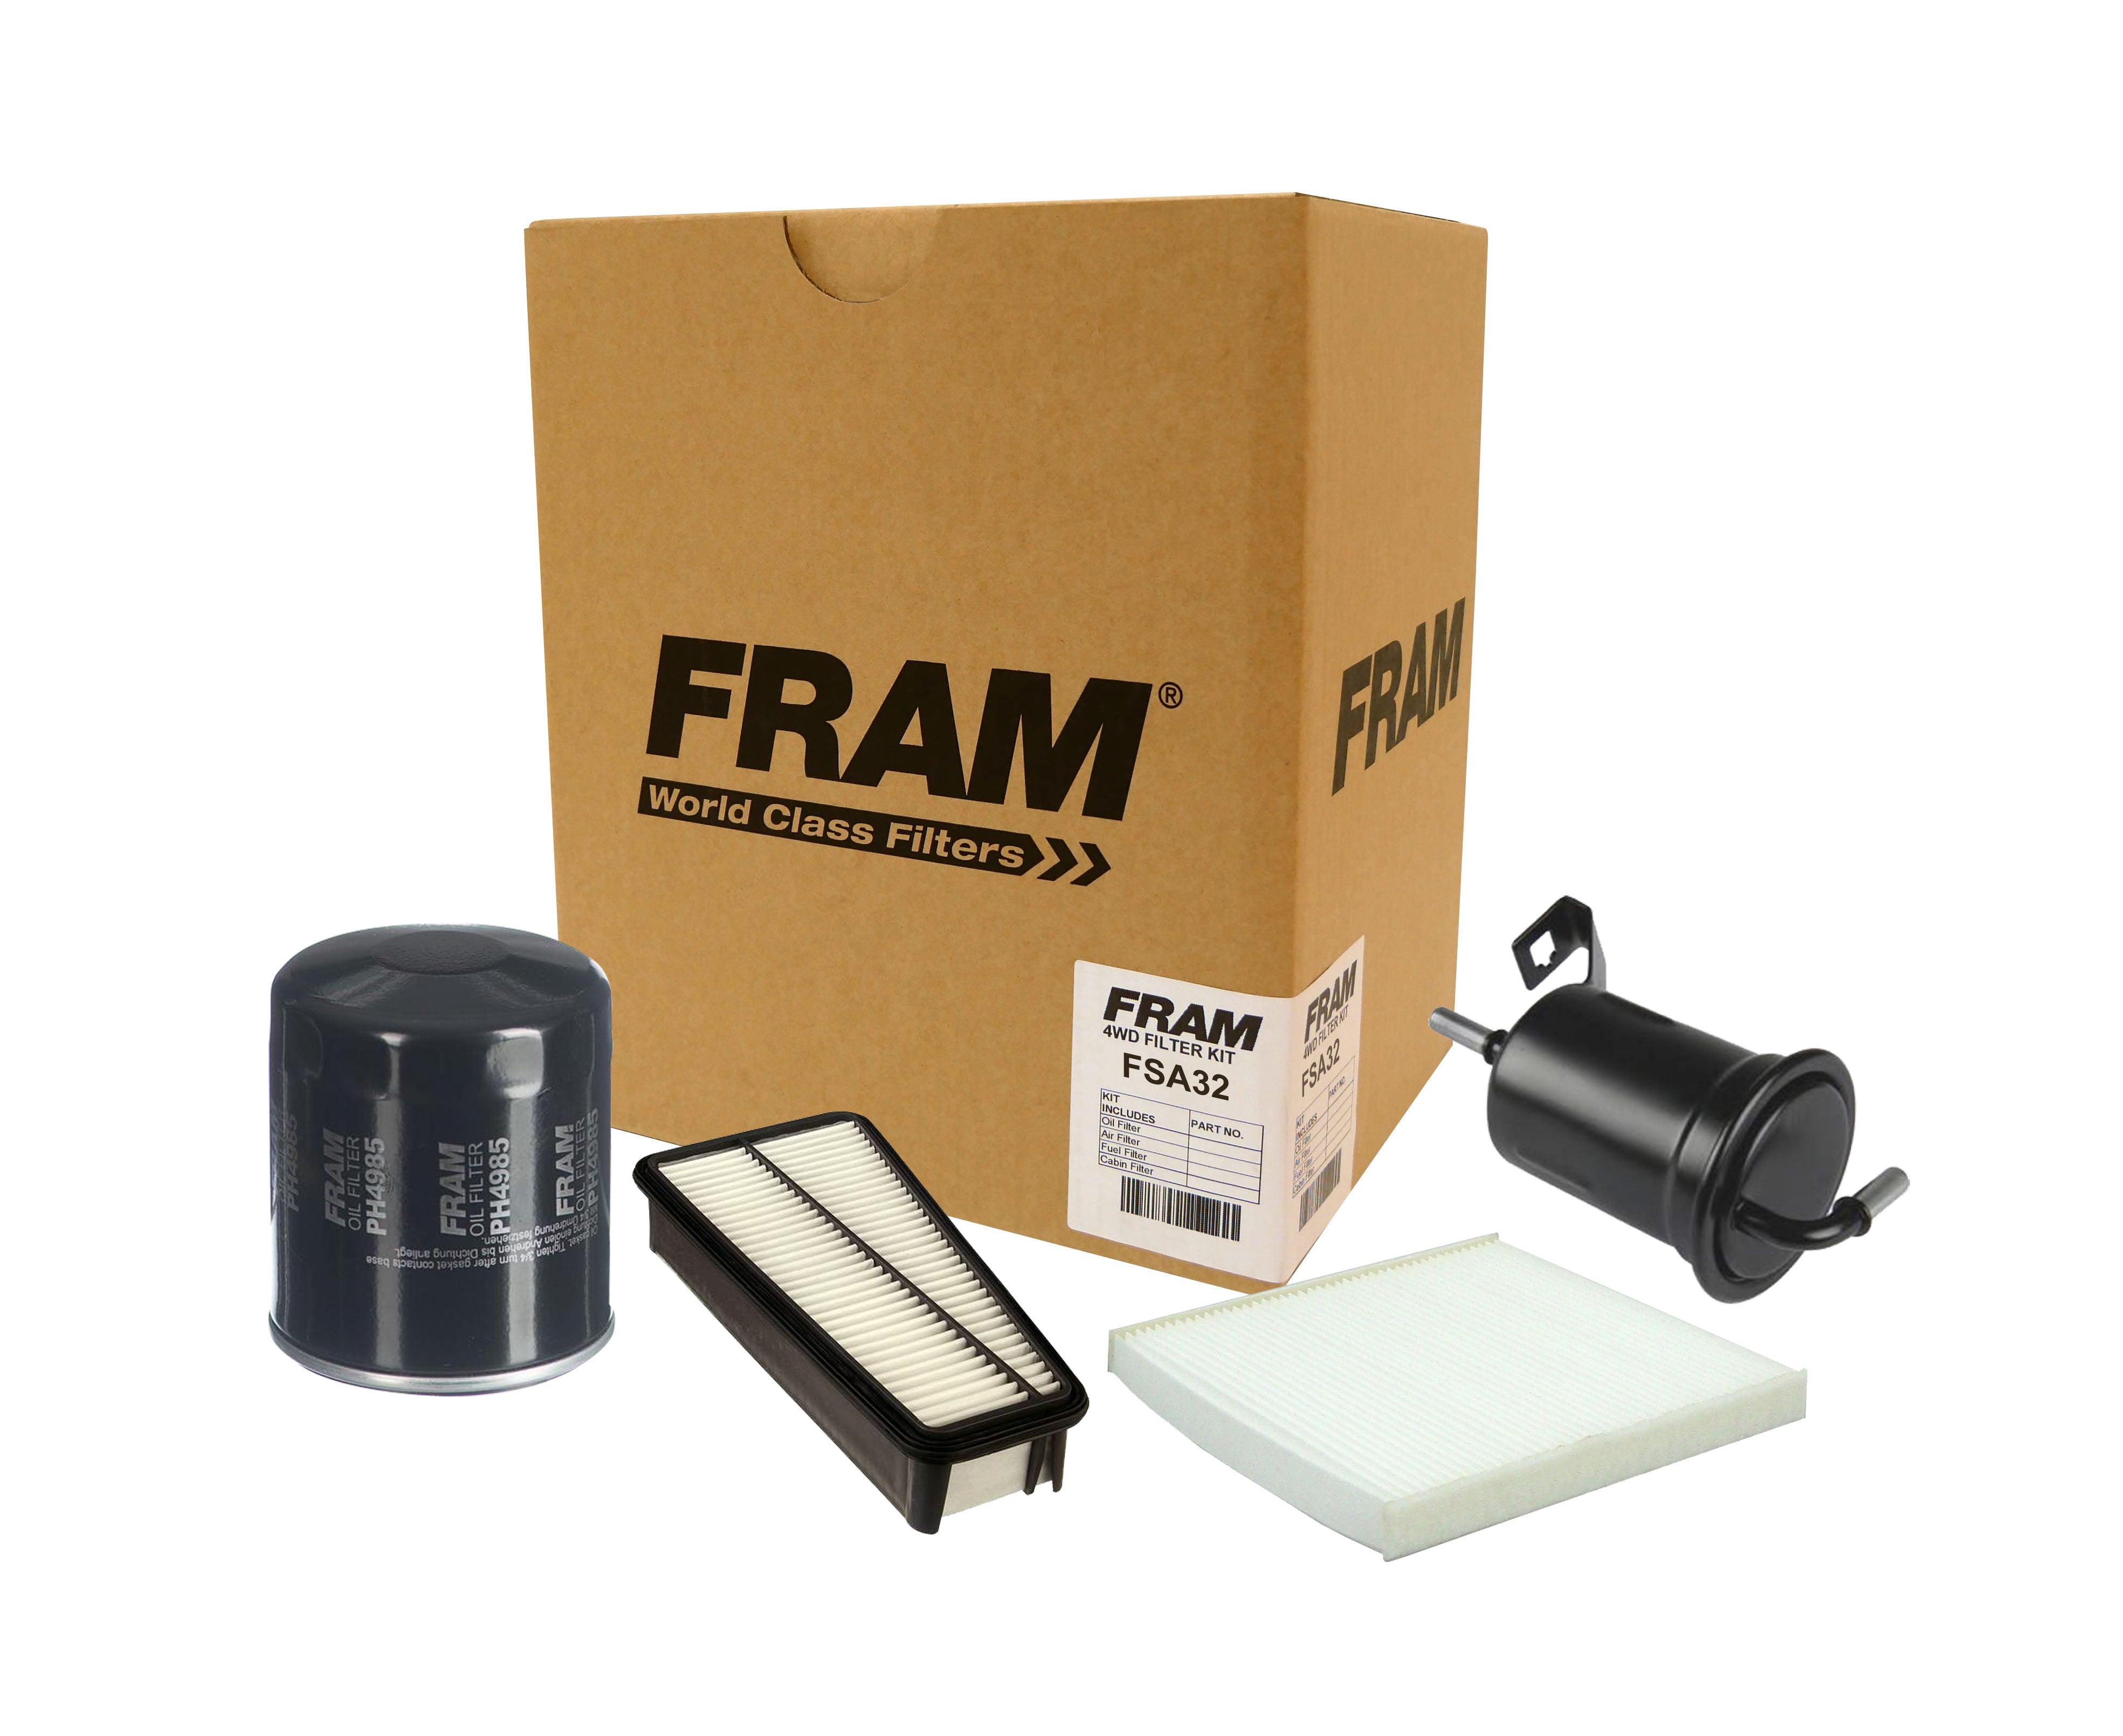 FRAM 4wd Filter Kit for Toyota Landcruiser Prado GRJ120 Petrol 4.0 | FRAM